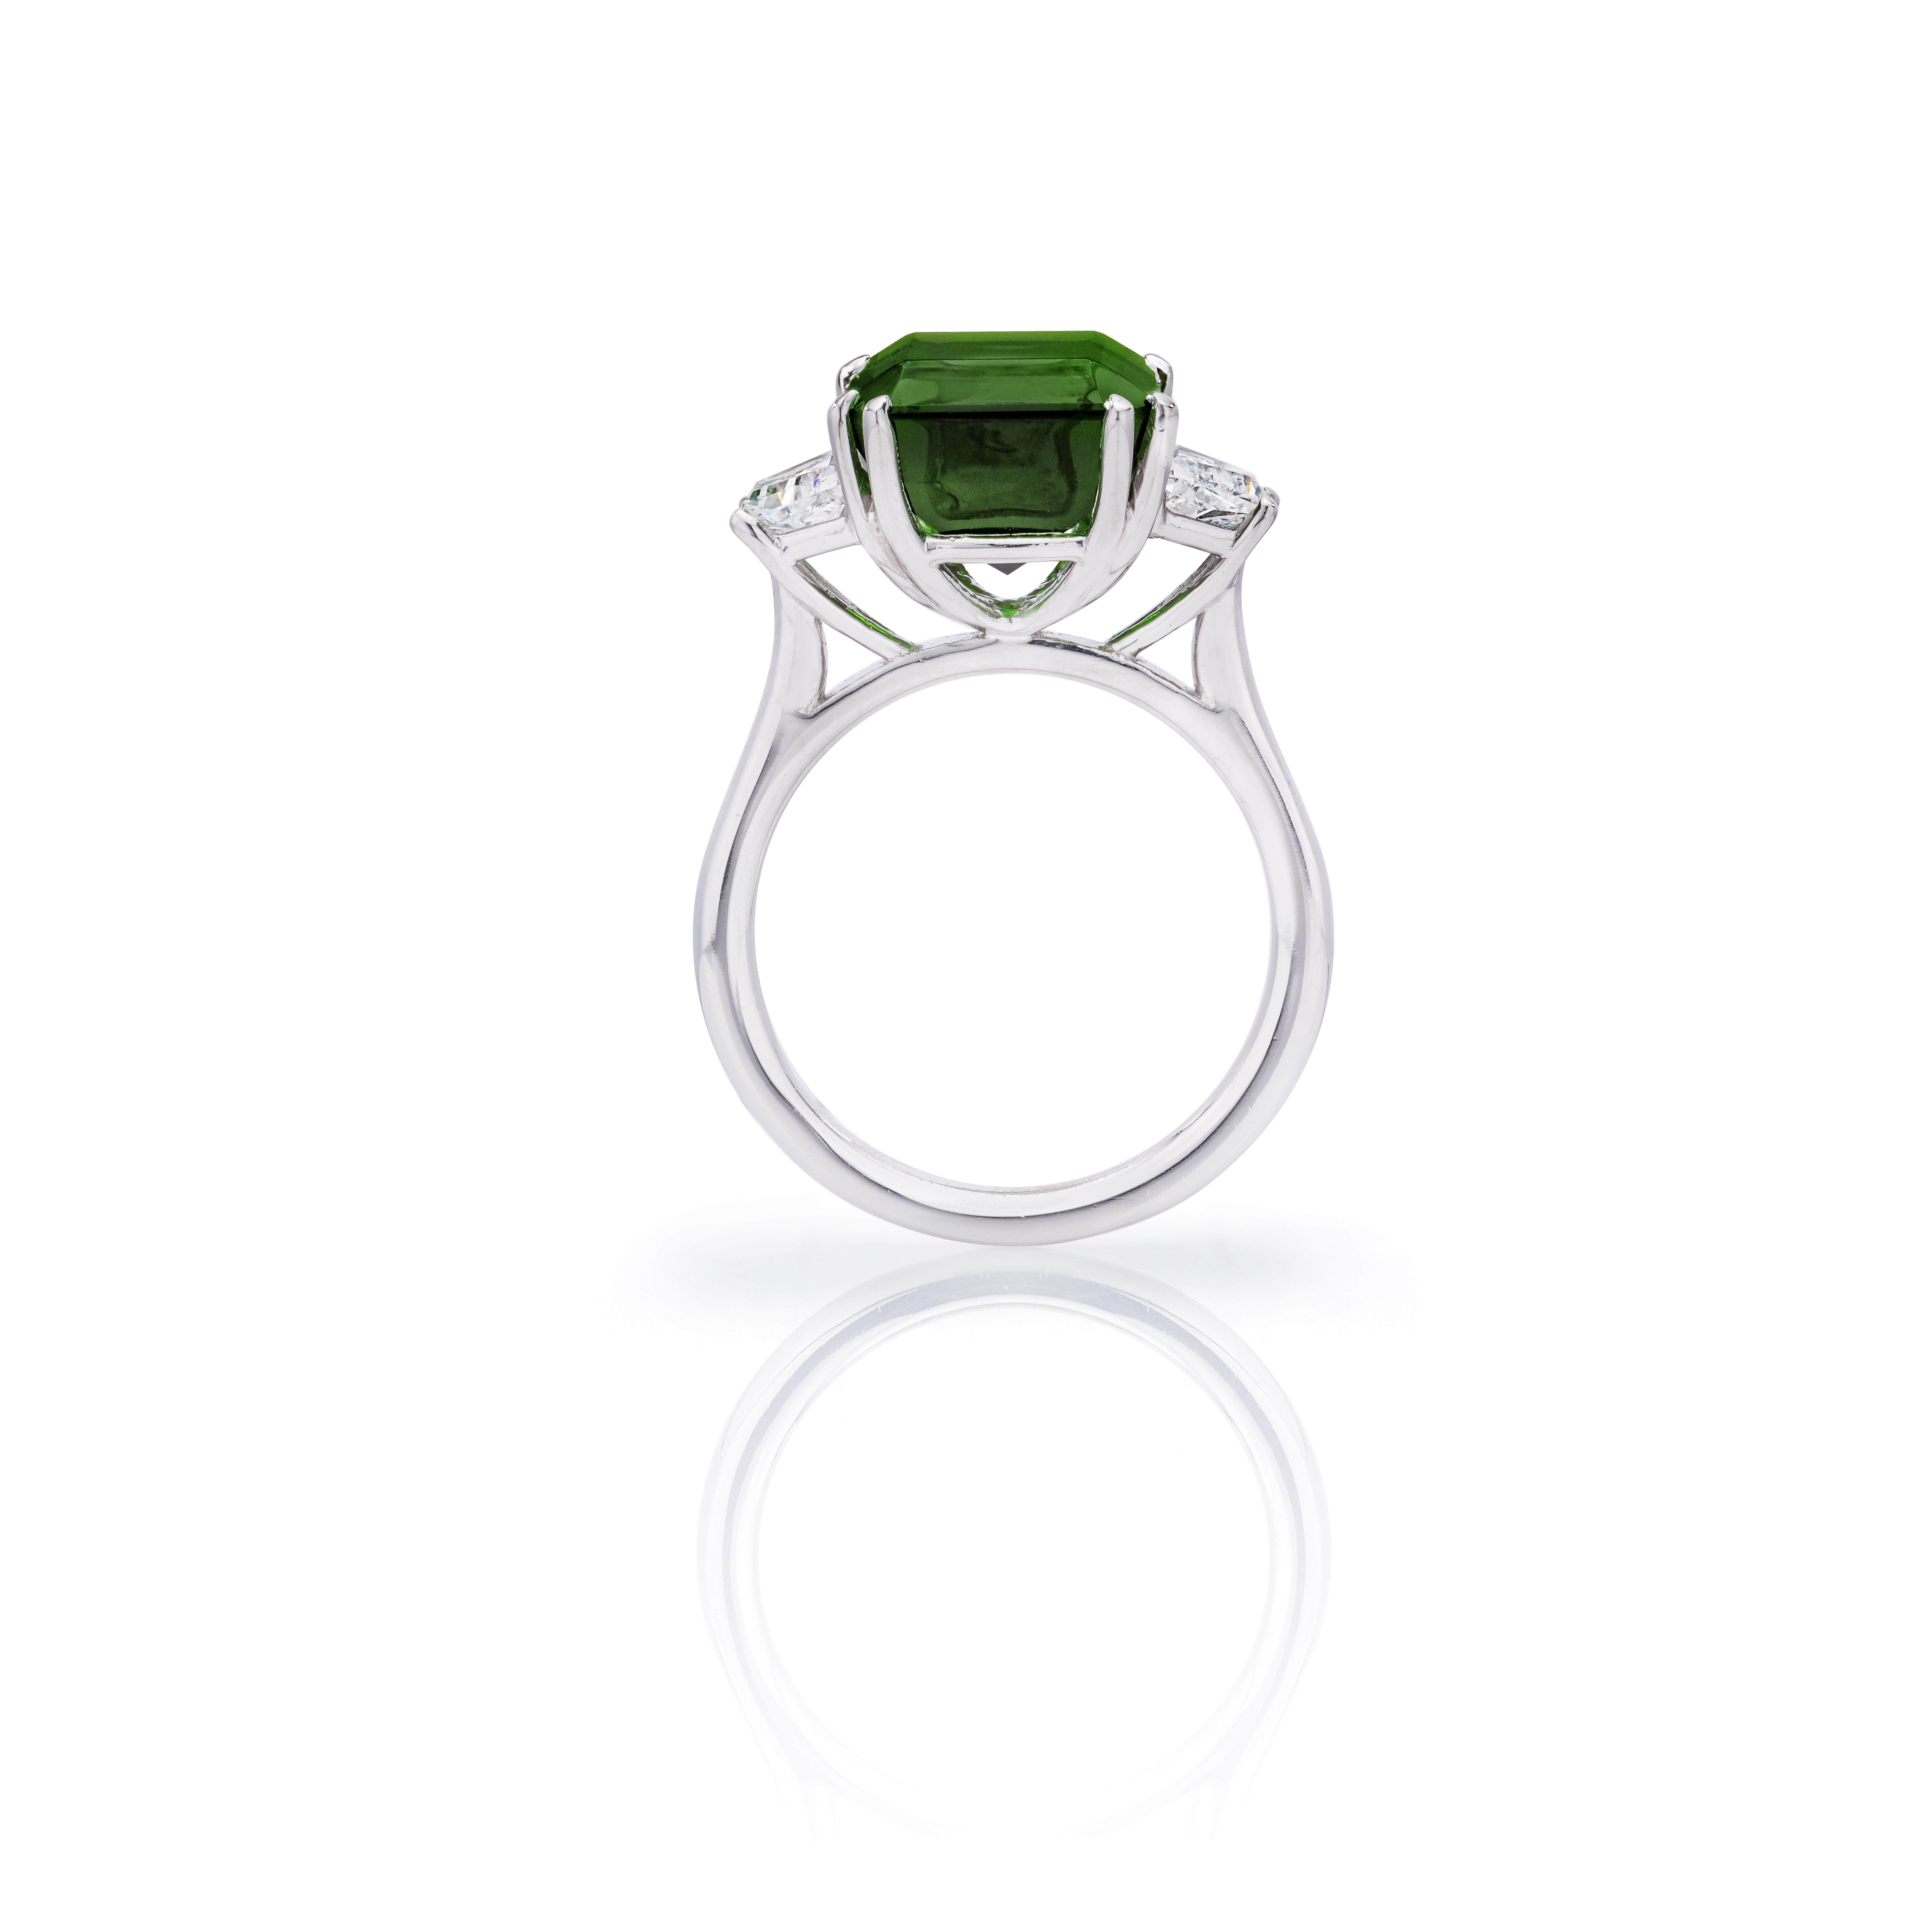 Was für ein reicher und klassisch aussehender Ring!  Sie werden sicher jedes Mal Komplimente bekommen, wenn Sie es tragen.

Ring Details:

Chromturmalin im Smaragdschliff (11,7 x 11,3 mm) mit einem Gewicht von 6,75 Karat
     Sehr leicht bläuliches